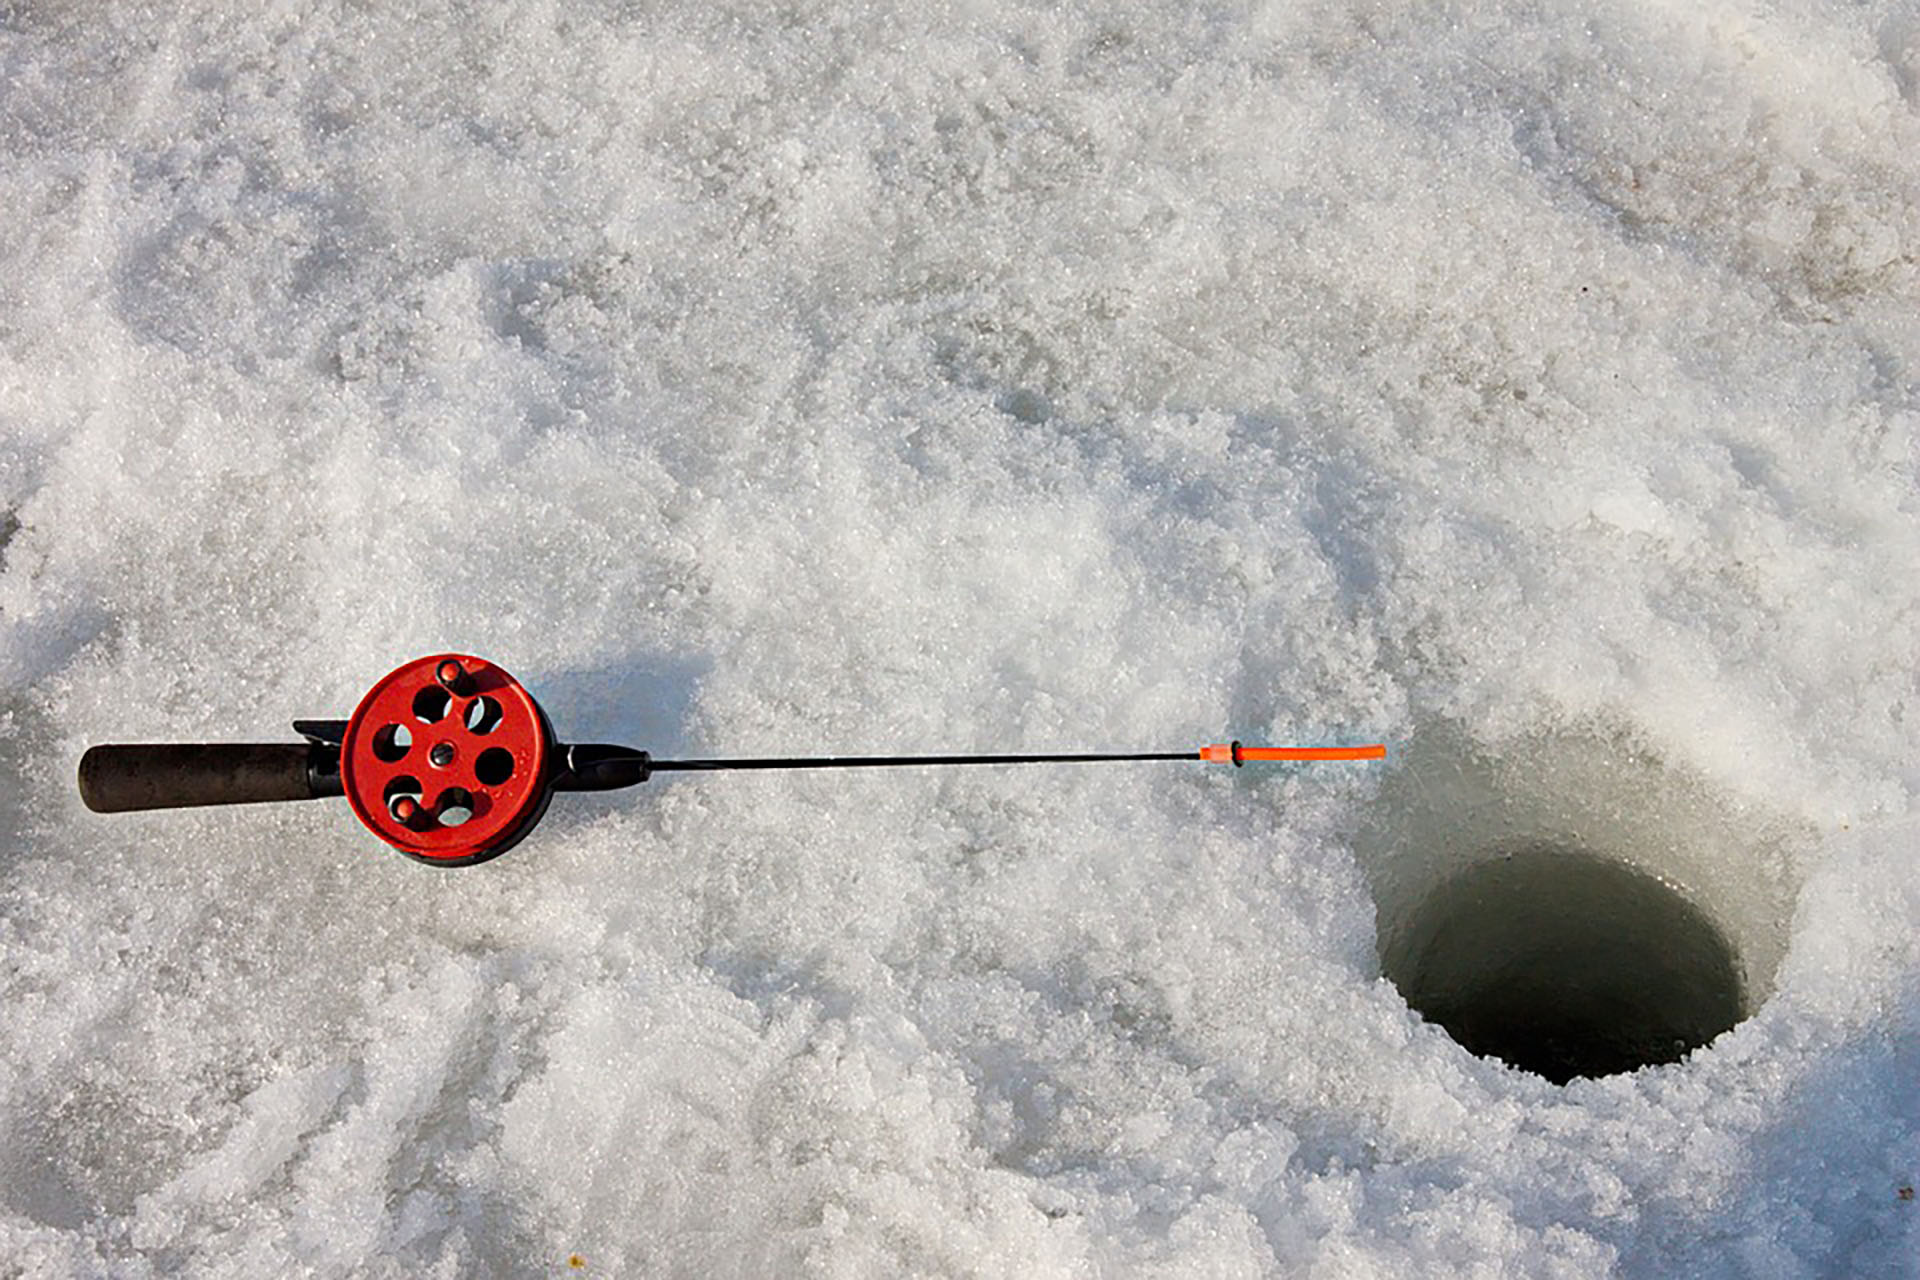 En Canadá lo llaman "ice fishing" y las familias se reúnen a hacerlo todos los inviernos